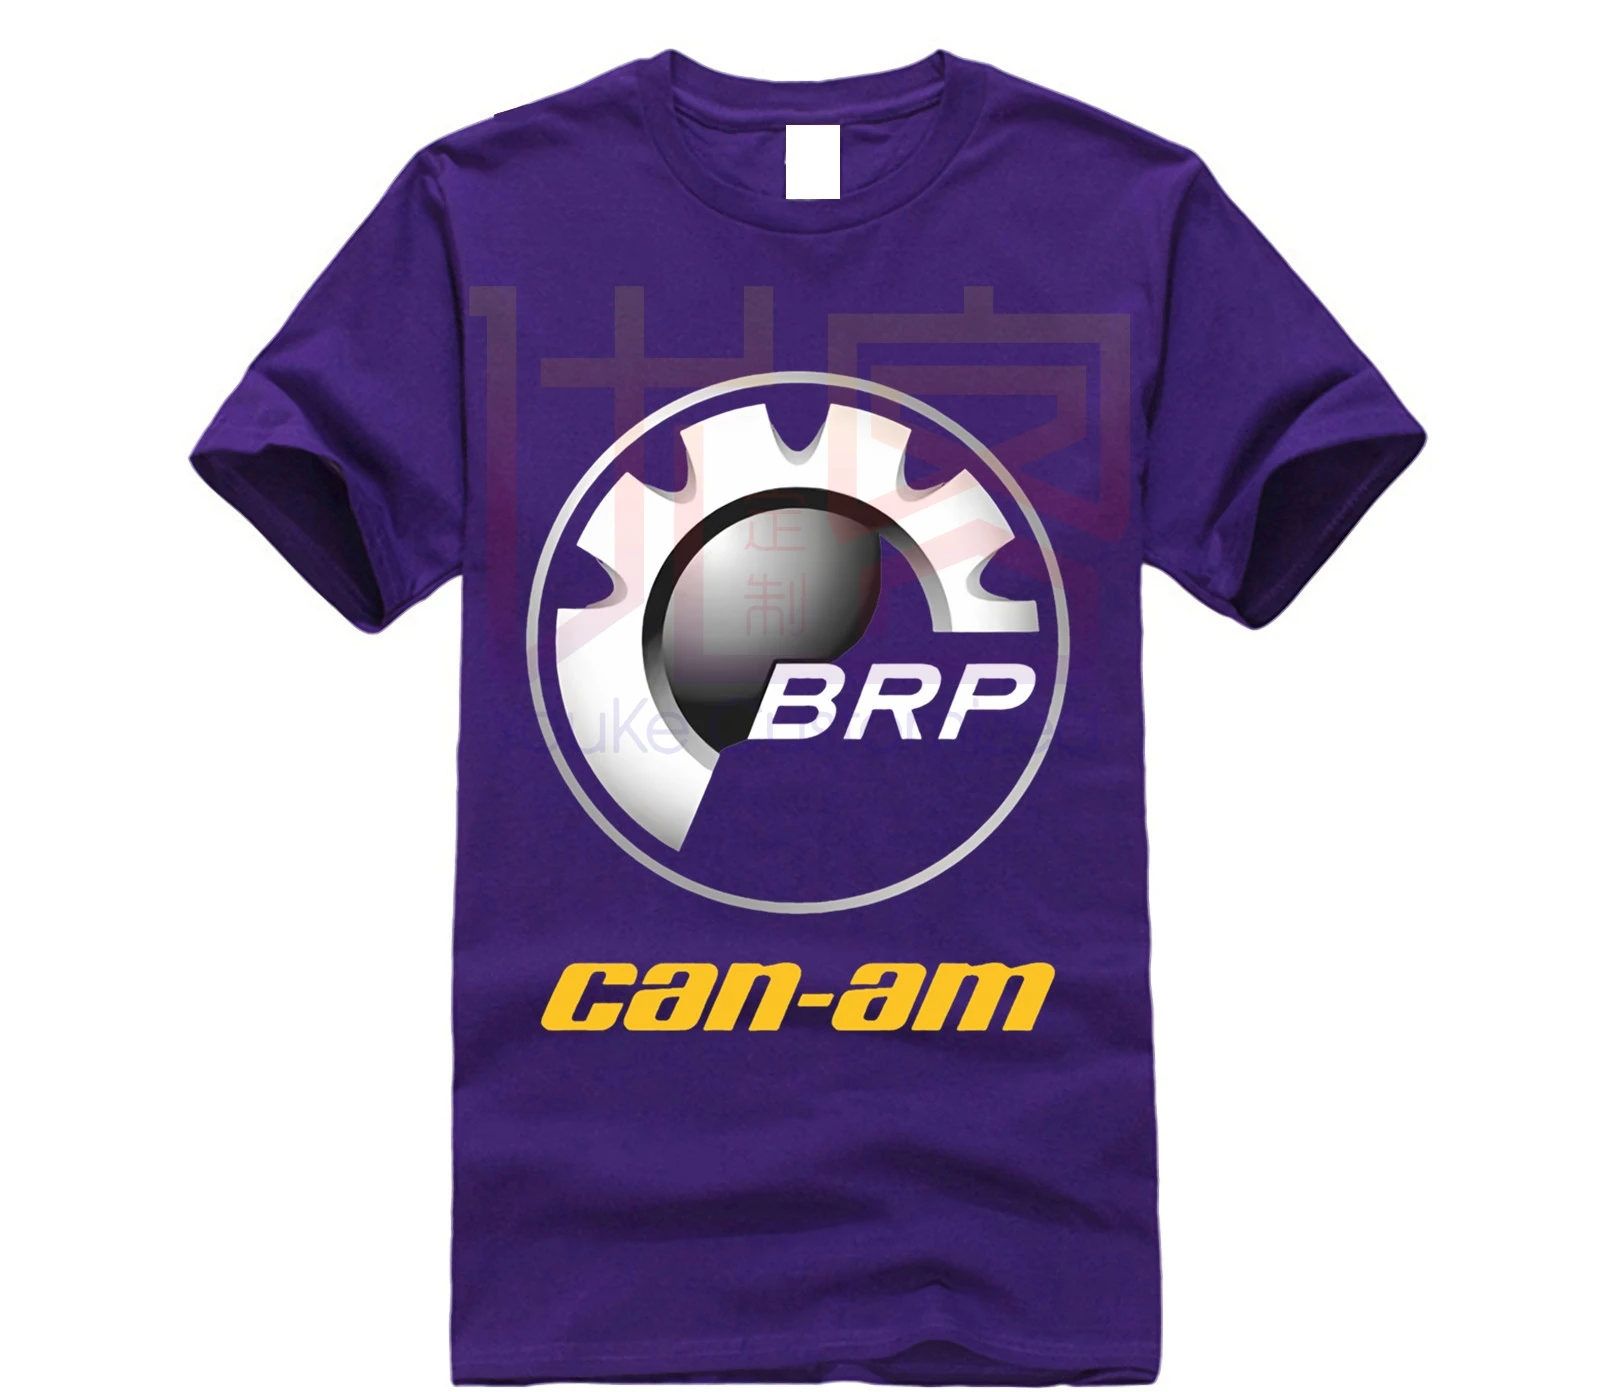 Футболка мужская с логотипом CAN AM черная хлопковая футболка коротким рукавом BRP ATV